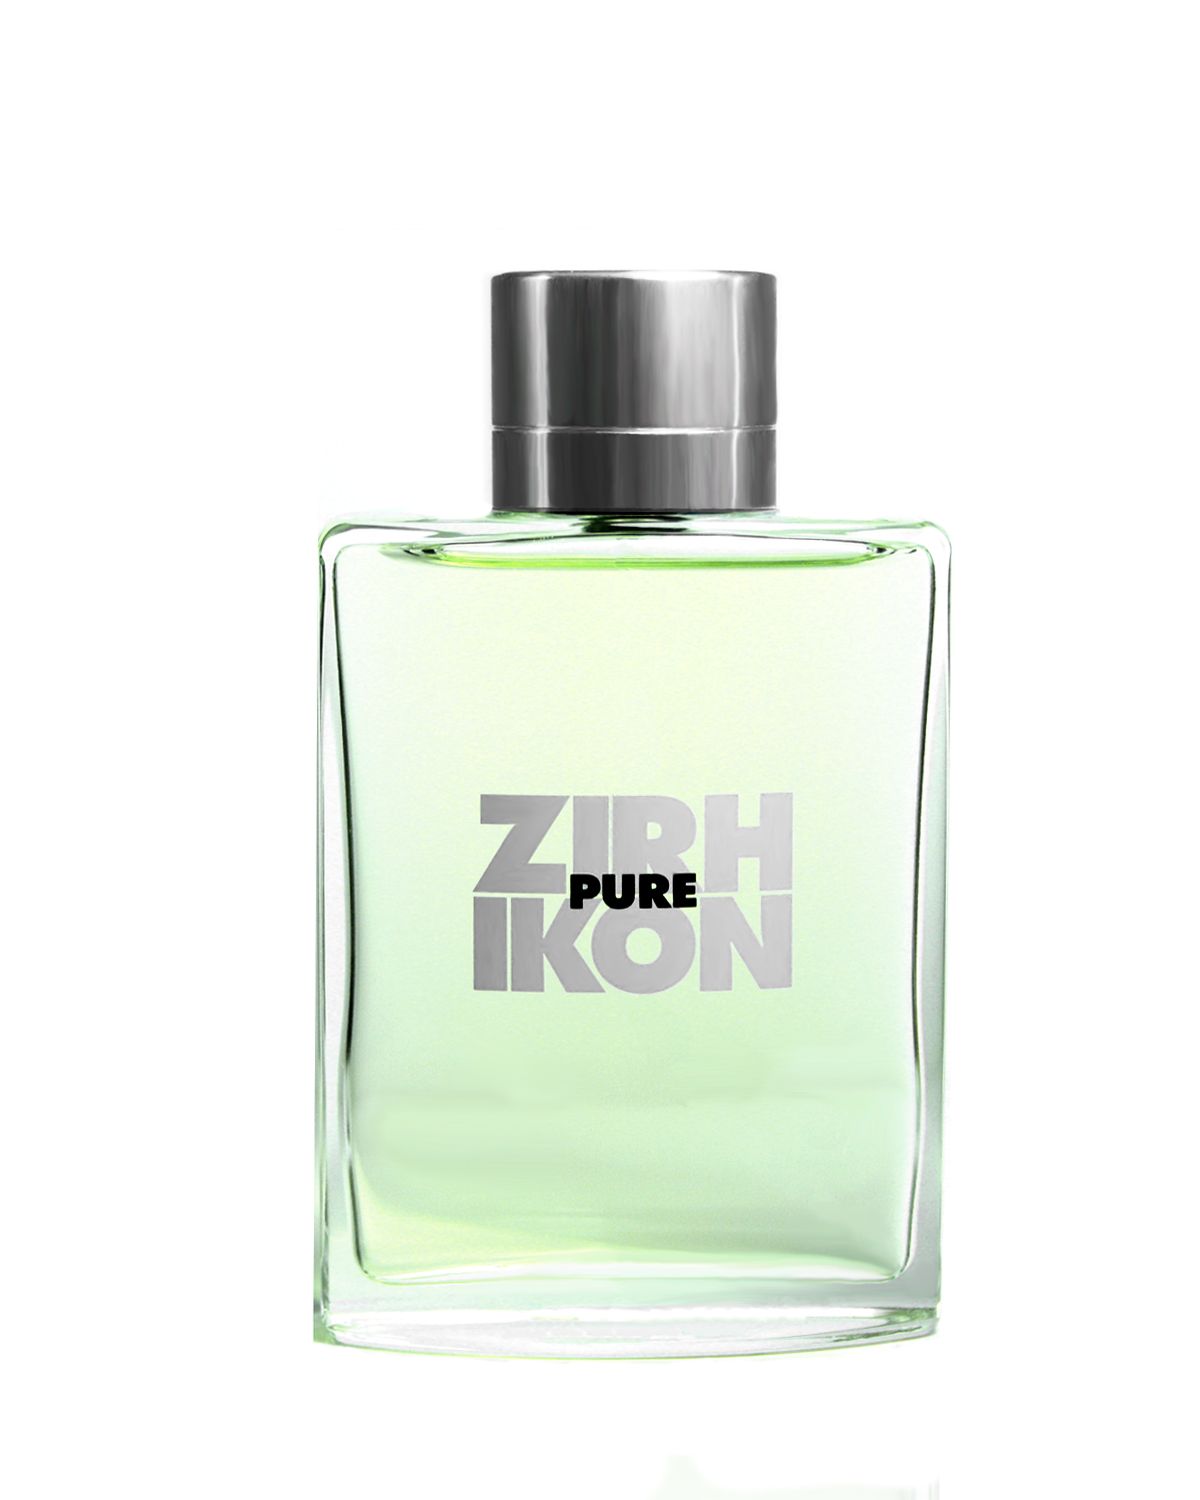 Zirh Ikon Pure Eau de Toilette Spray 125ml - Feel Gorgeous